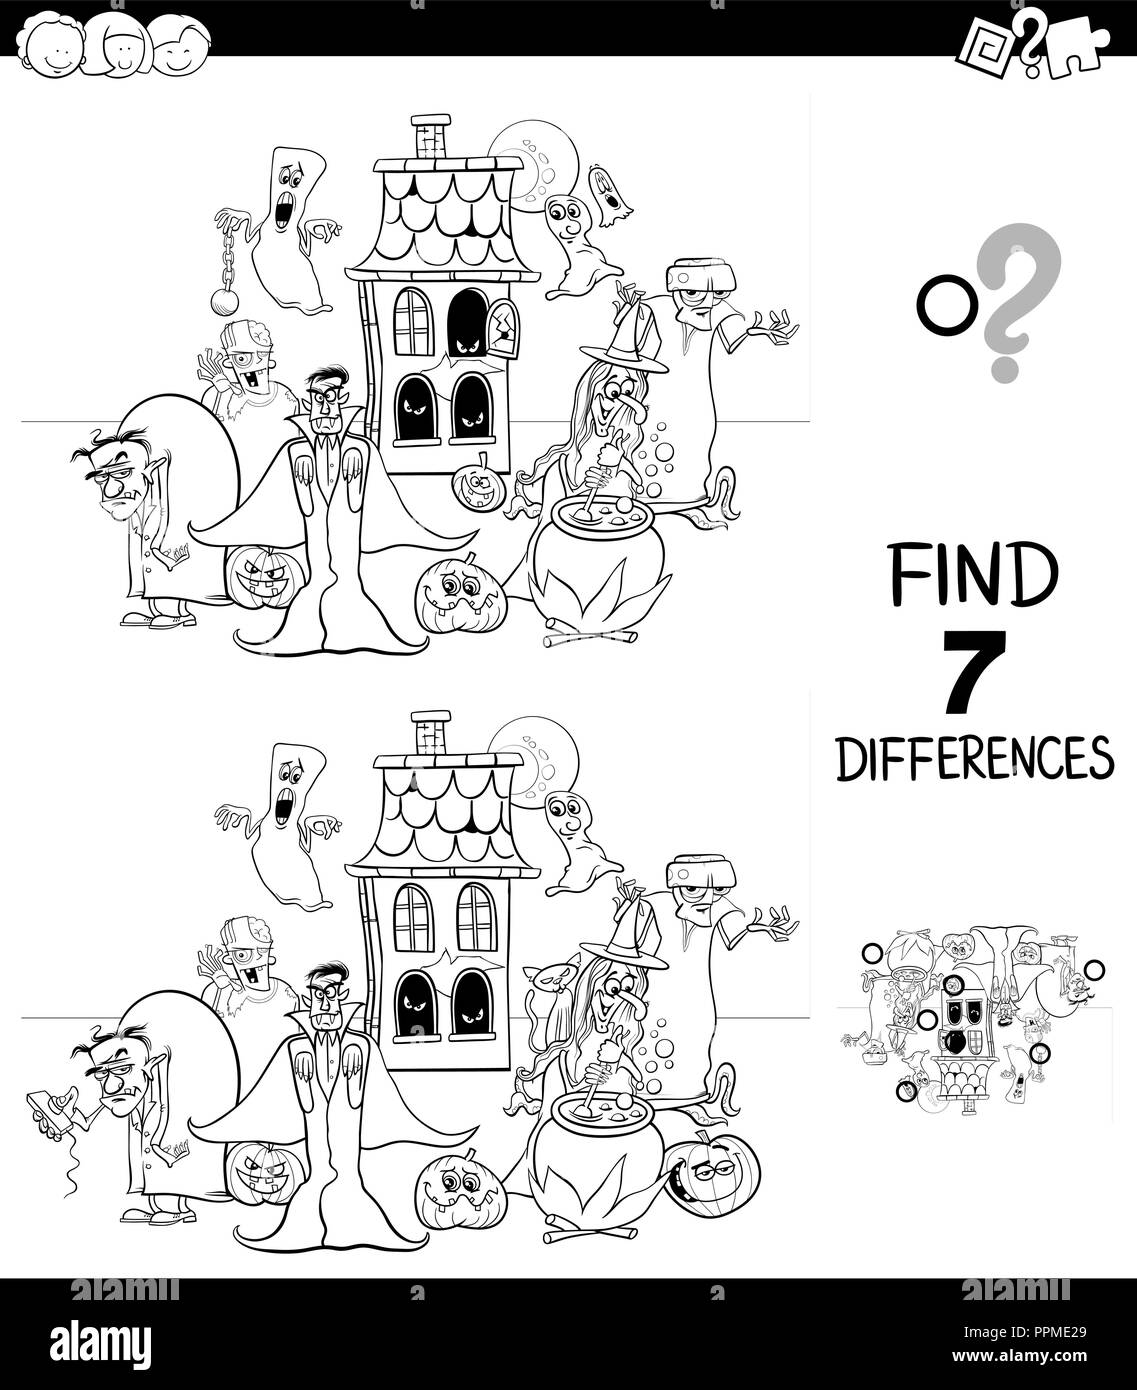 Bianco e Nero Cartoon illustrazione di trovare 7 differenze tra le immagini del gioco educativo per bambini con Spooky Halloween caratteri Colo Illustrazione Vettoriale